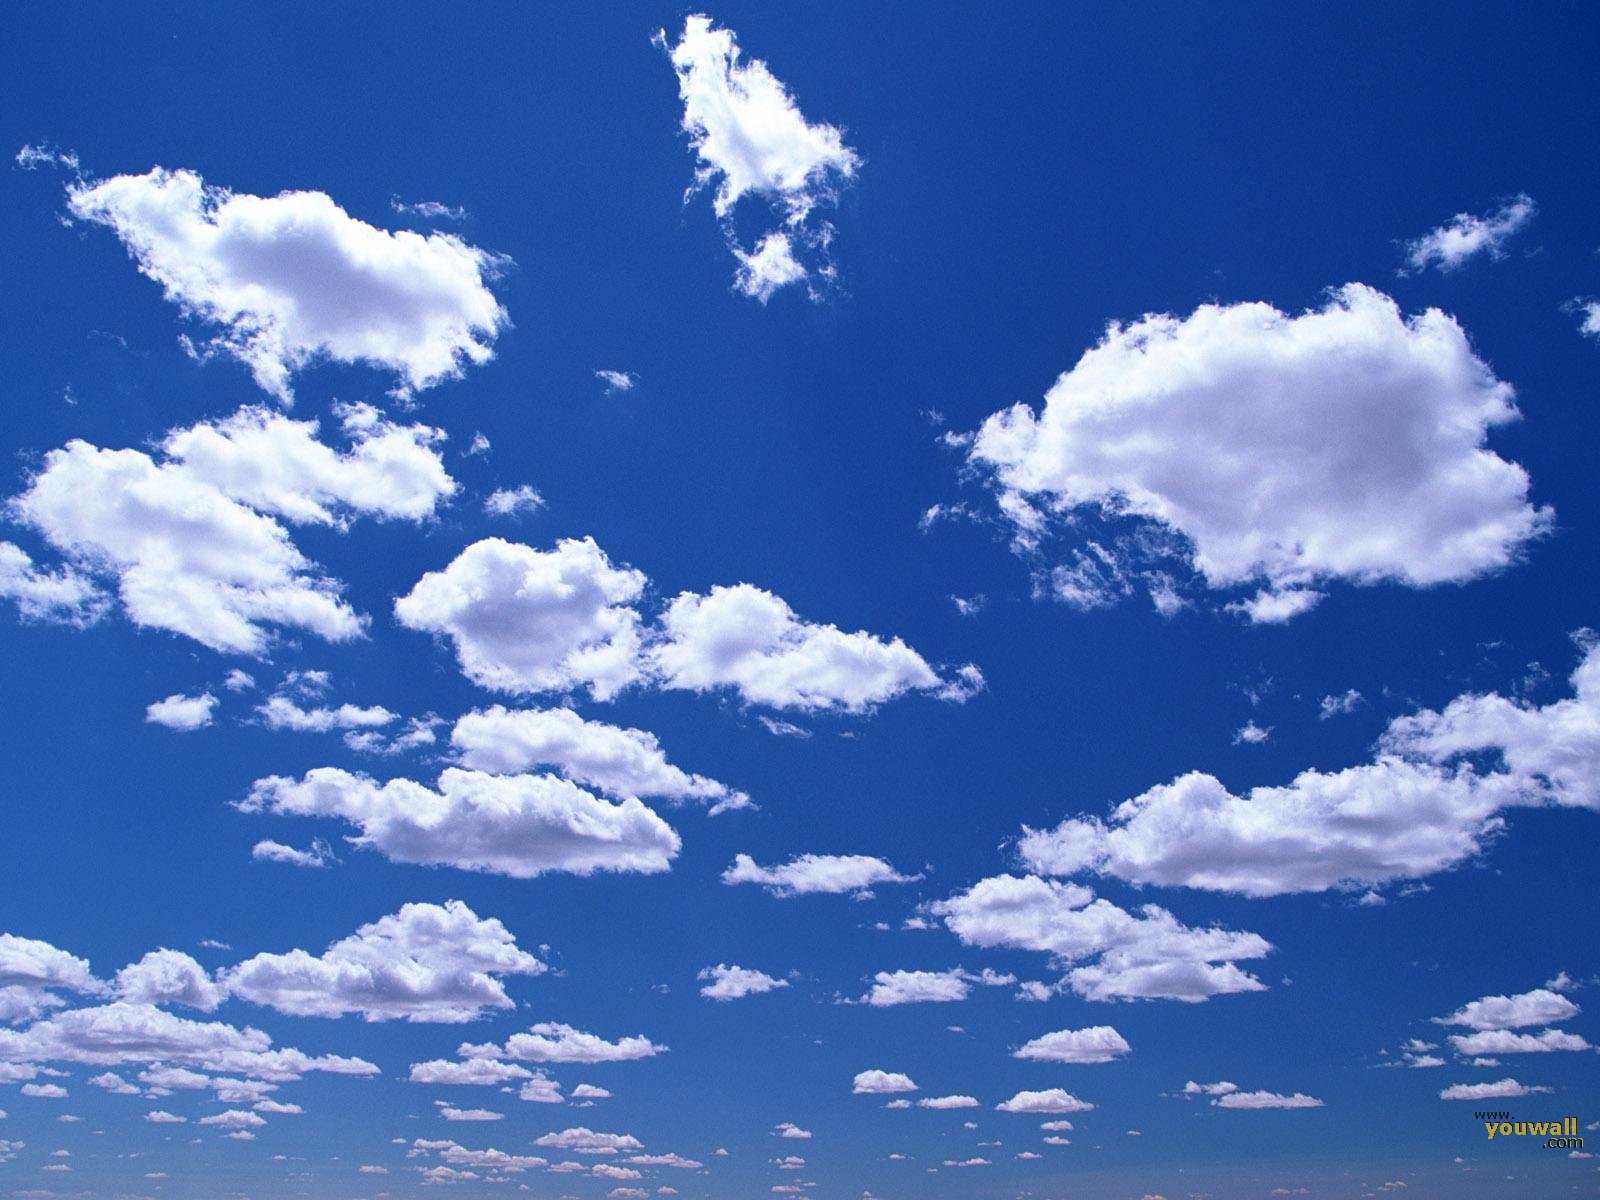 Скачать обои бесплатно Облако, Земля/природа картинка на рабочий стол ПК